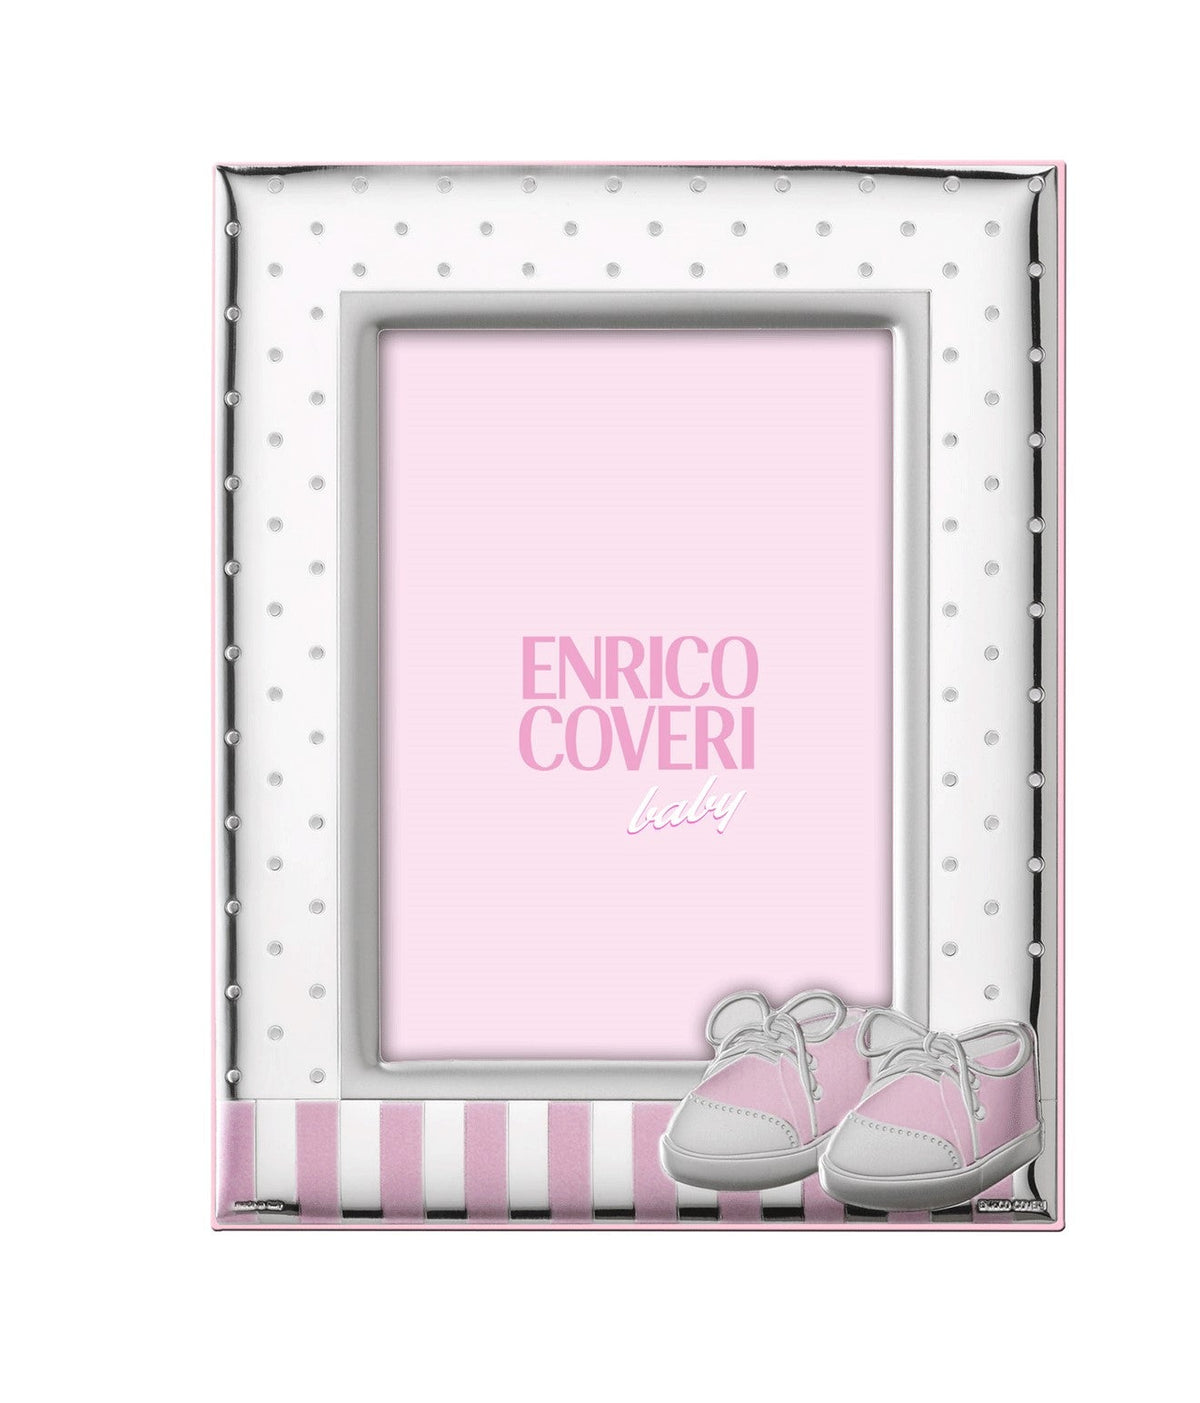 Cornice-ENRICO COVERI-scarpette-rosa-EC0621/9R-bonini-gioielli